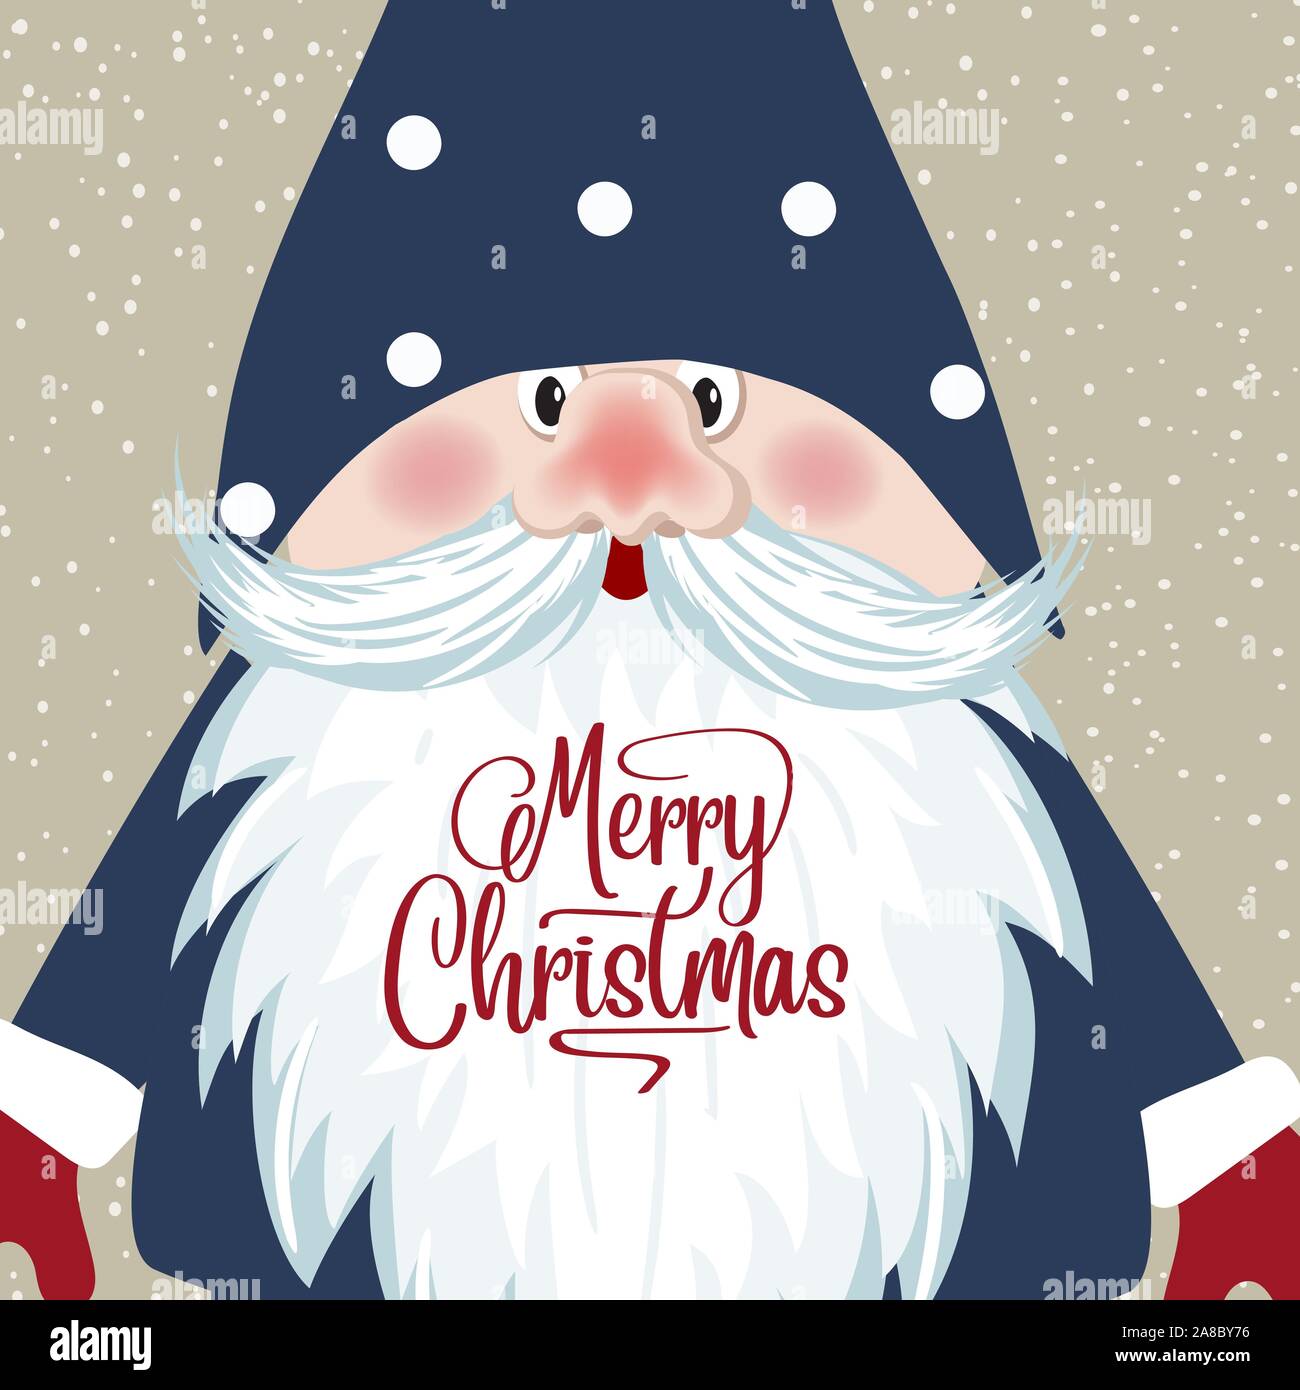 Weihnachtskarte mit Gnome. Retro Style Weihnachten Poster. Vektor Stock Vektor